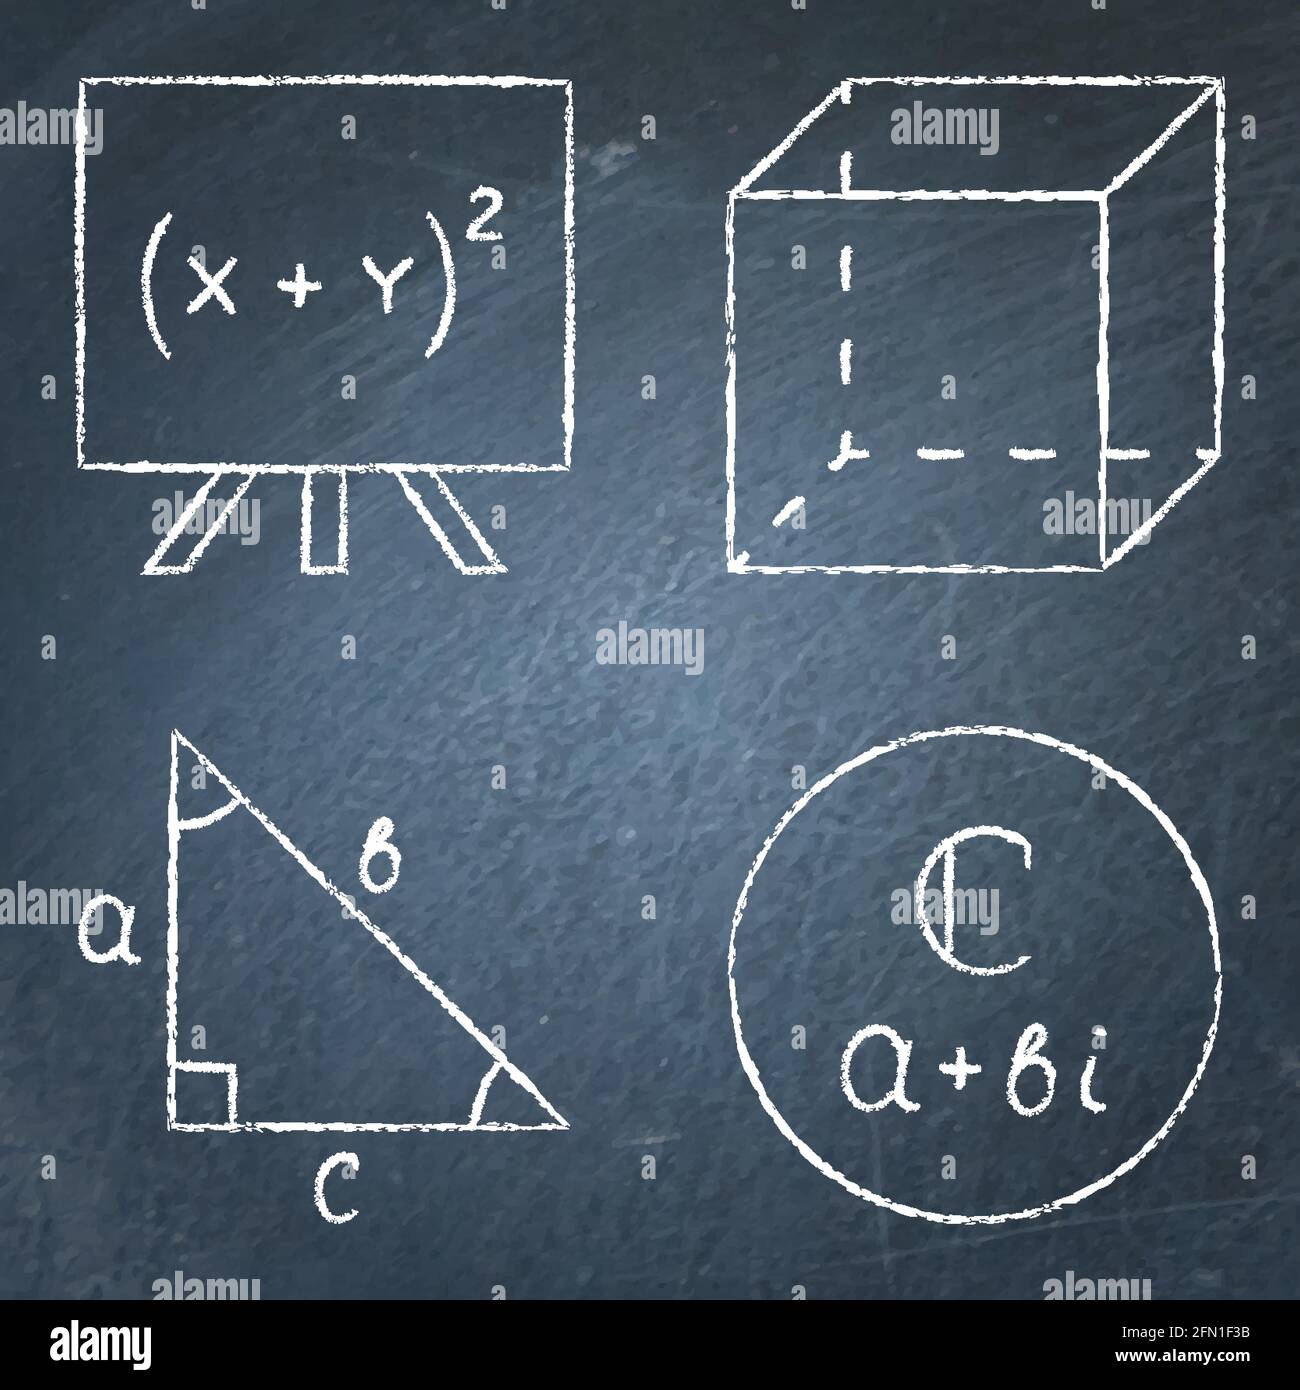 Icone matematiche impostate in stile linea sulla lavagna. Espressioni di algebra, geometria, trigonometria, numeri complessi. Illustrazione vettoriale. Illustrazione Vettoriale